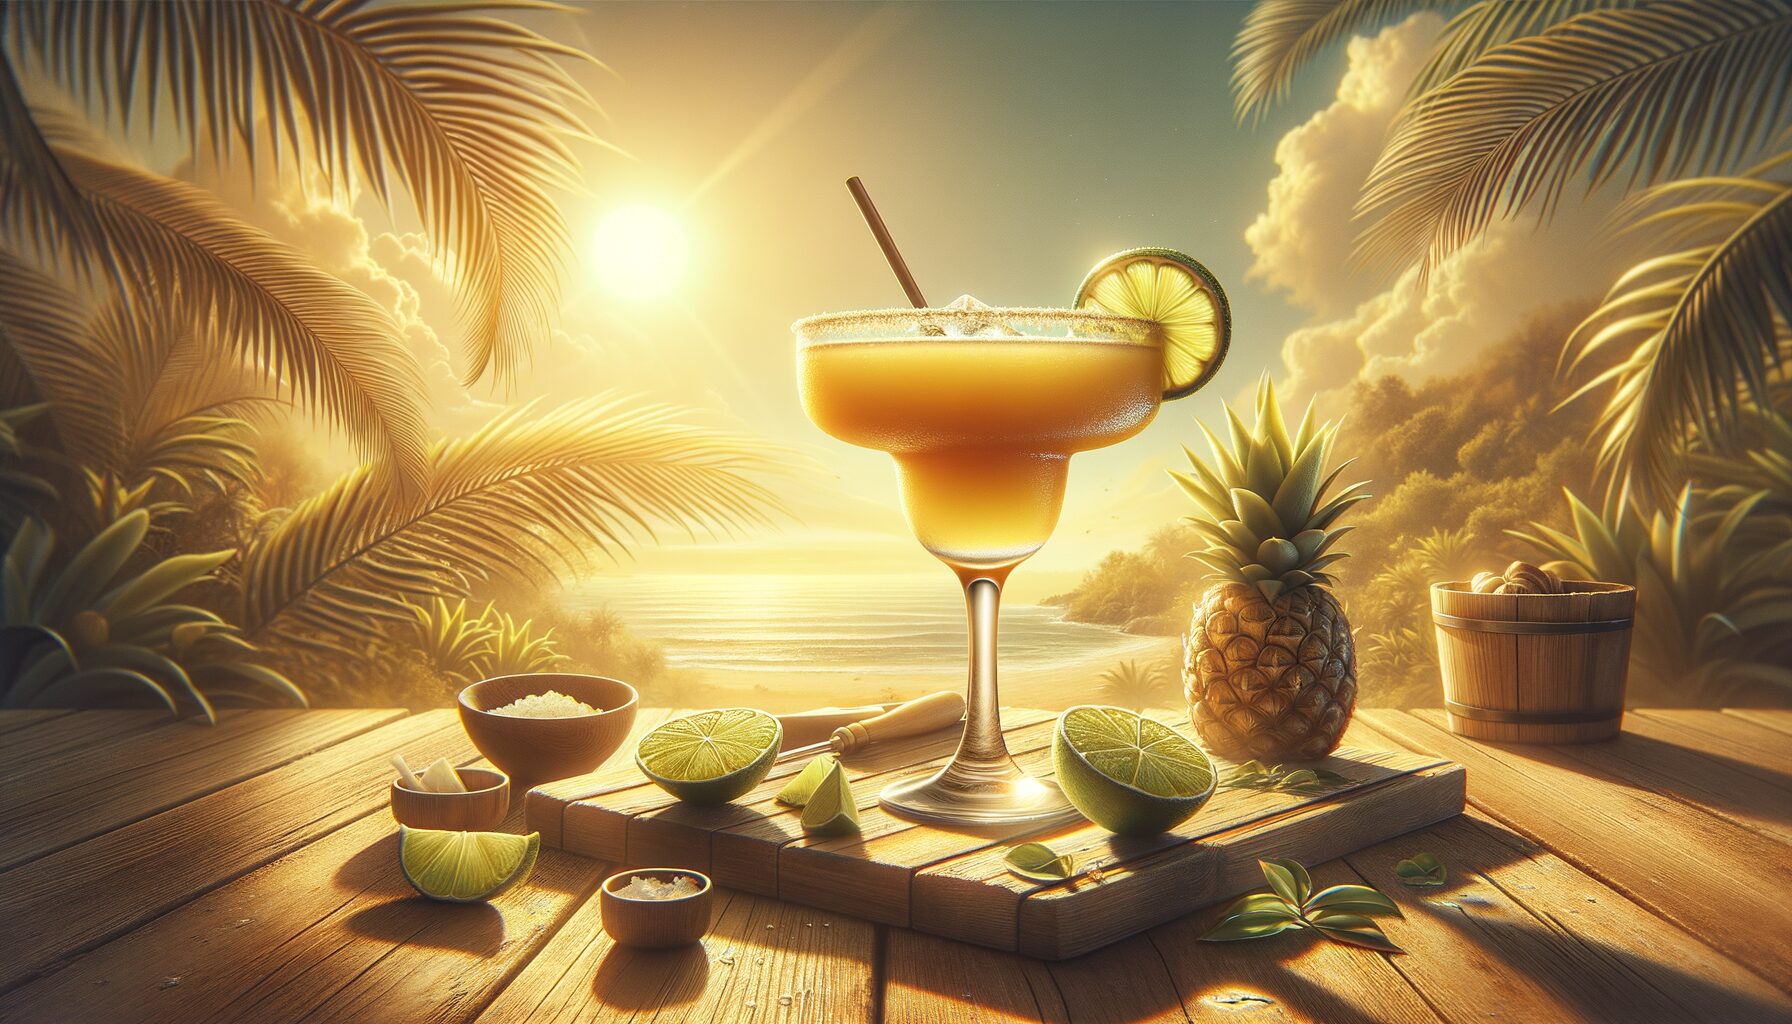 Comment preparer une delicieuse rhum margarita pour un cocktail estival rafraichissant